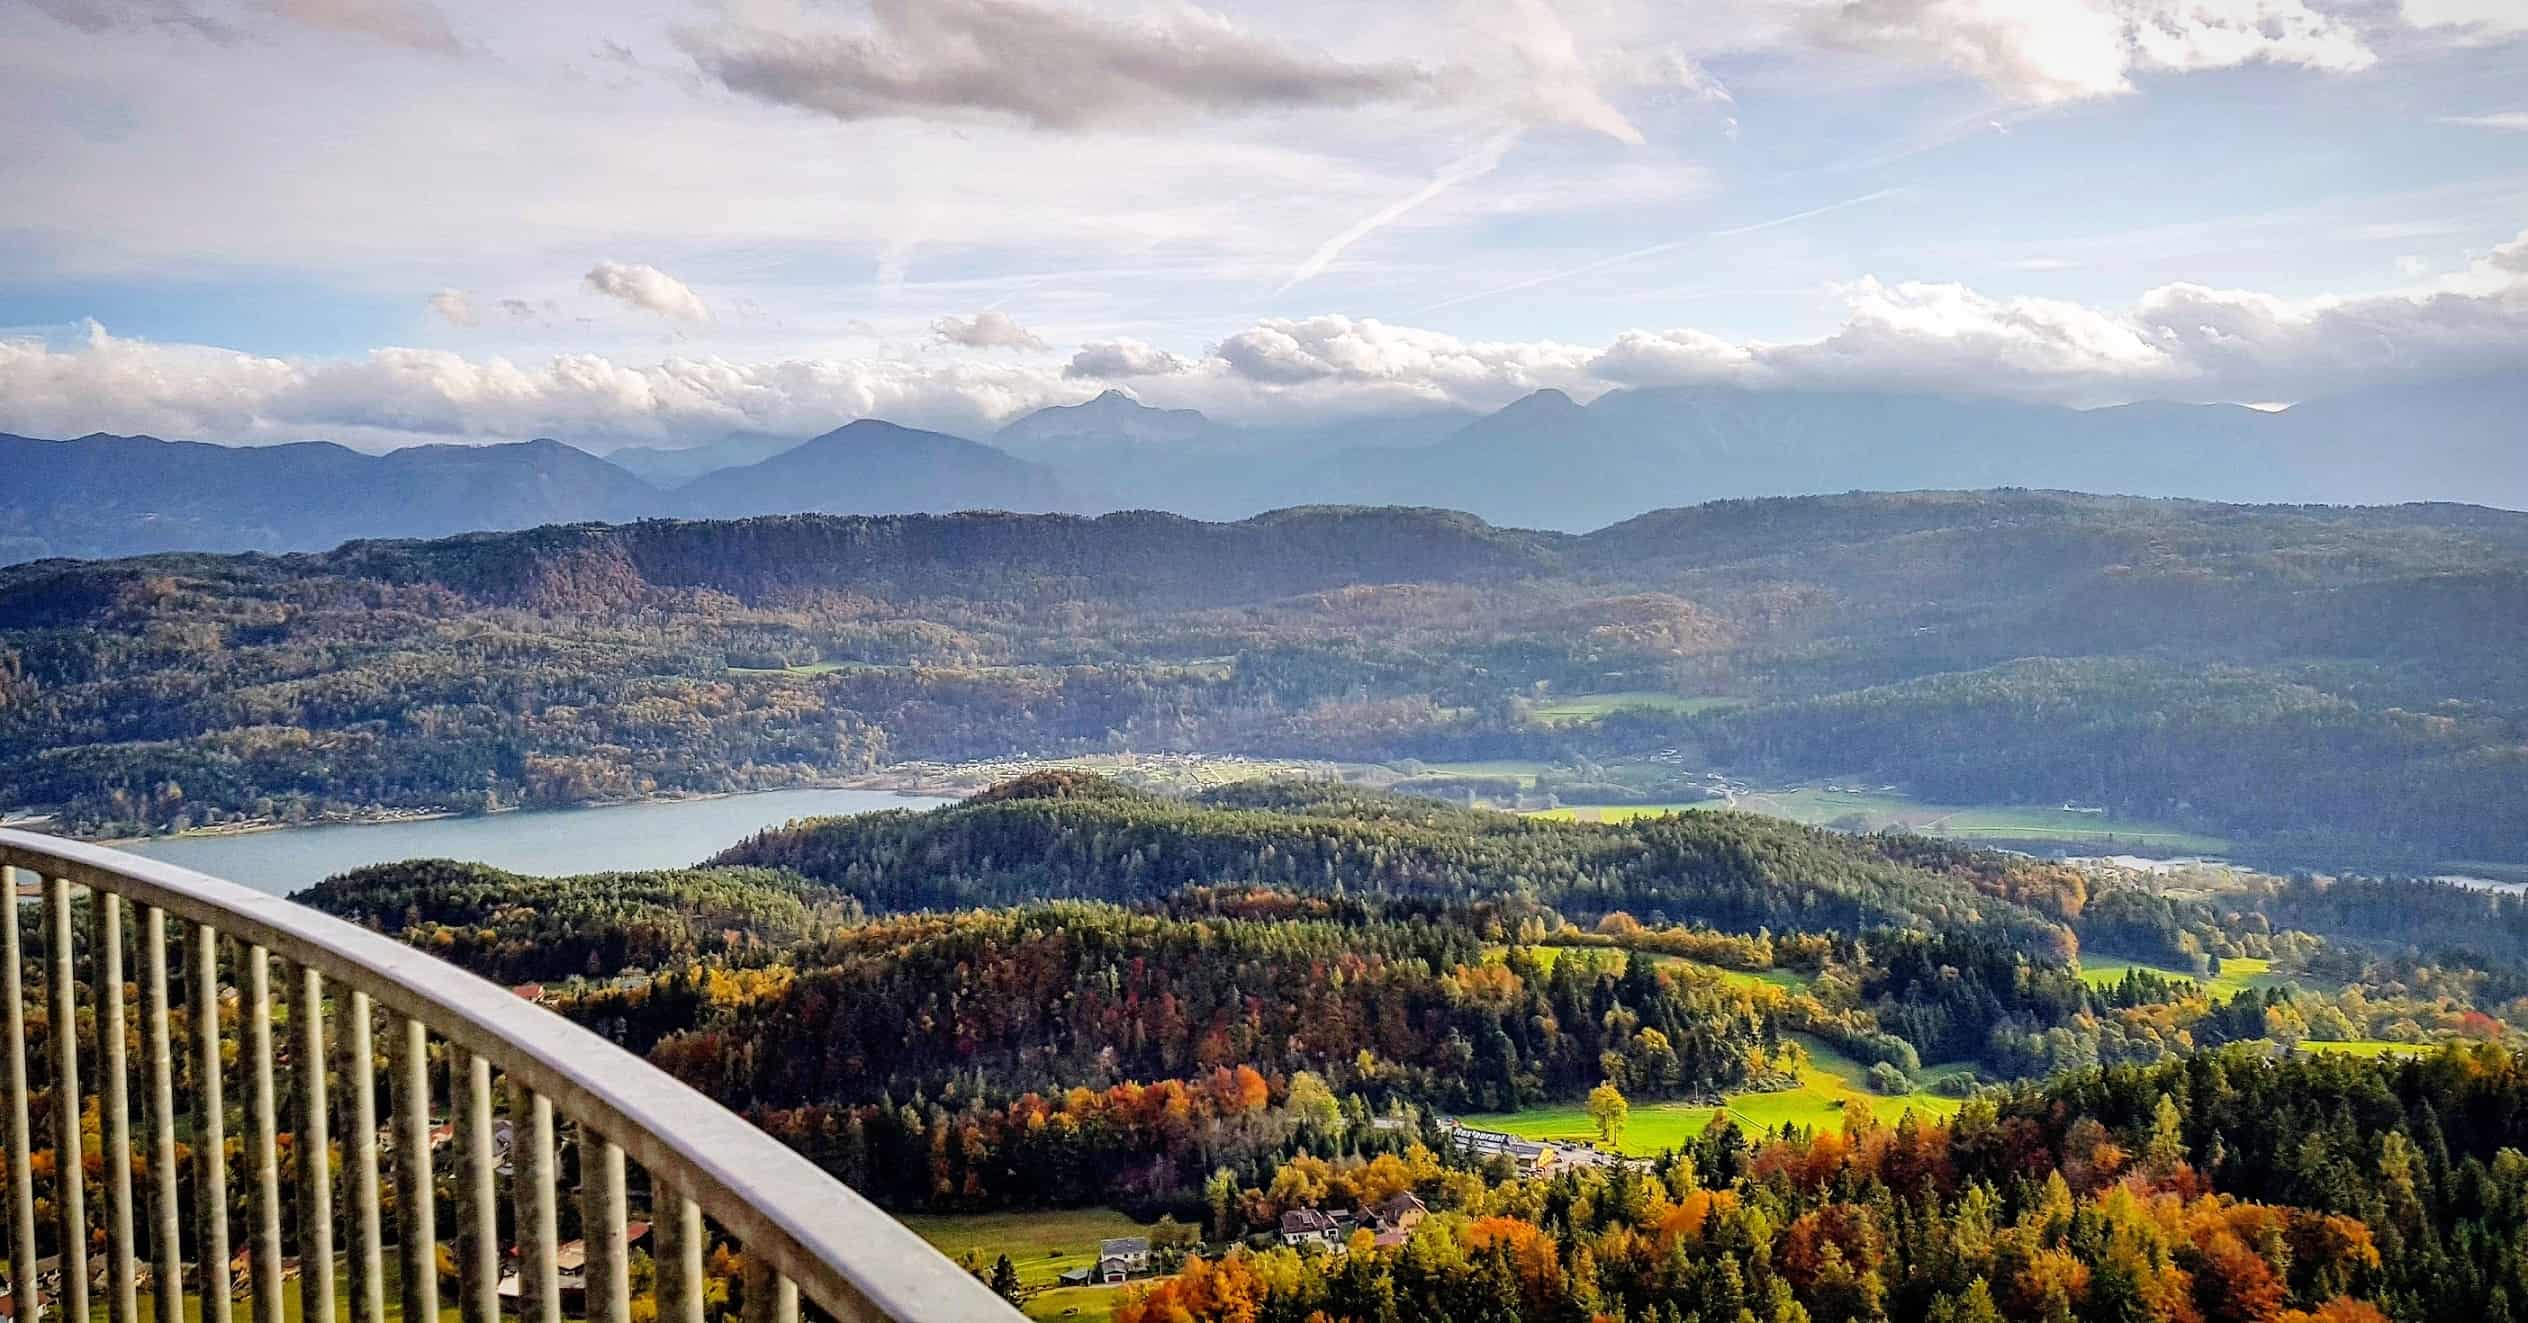 Herbst Landschaft Kärnten - Keutschacher Seental und Karawanken vom Ausflugsziel Pyramidenkogel in Österreich betrachtet.